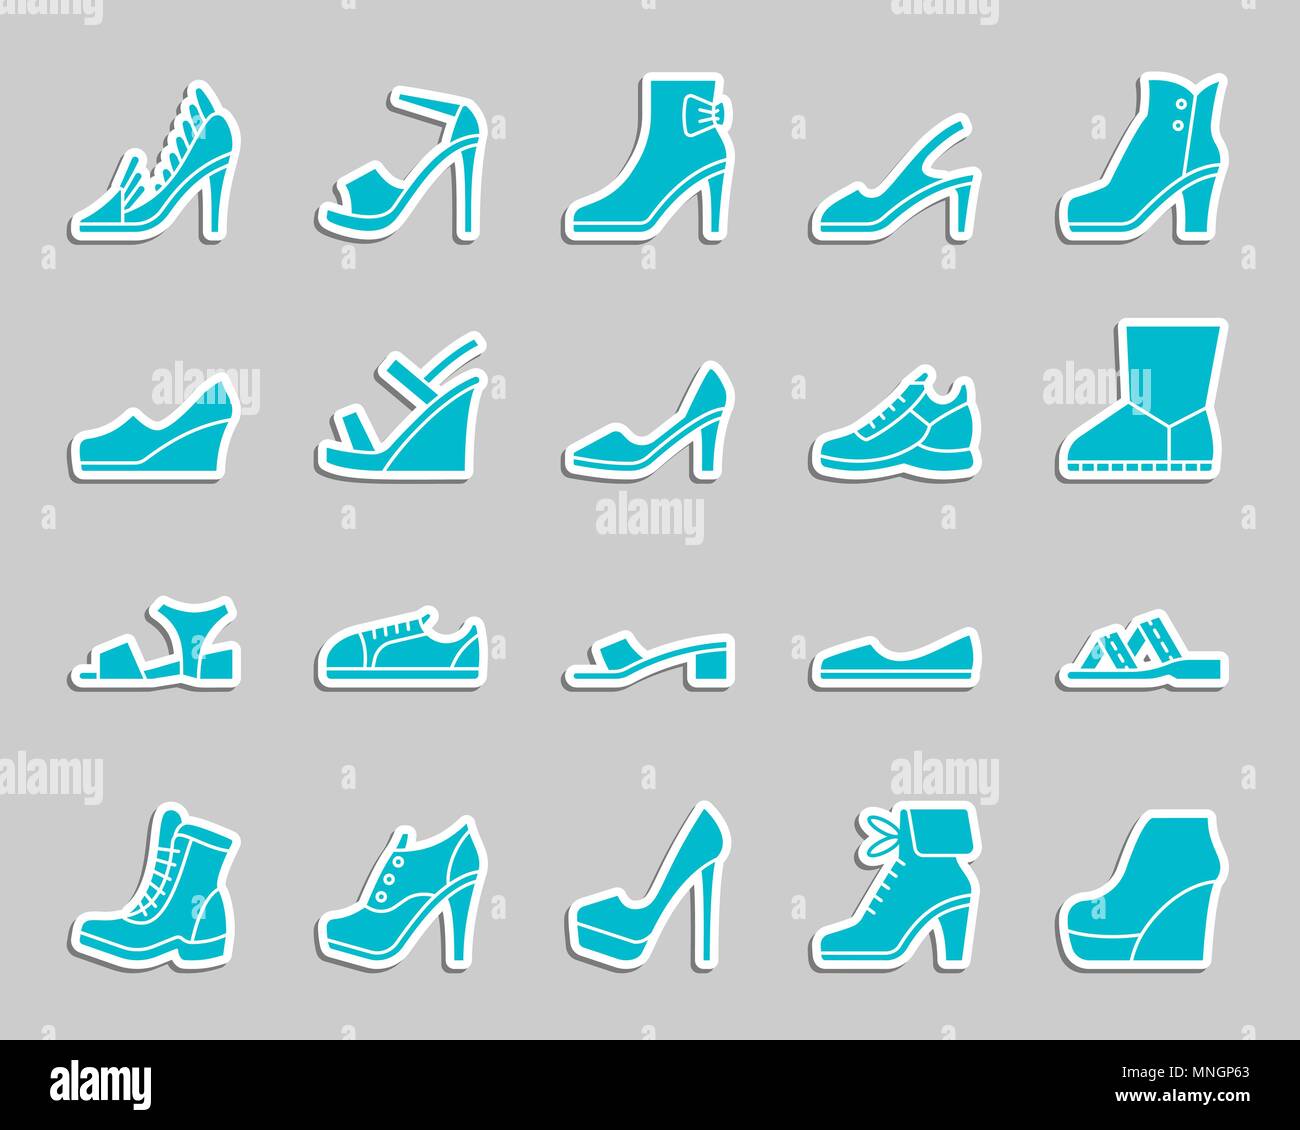 Calzature donna silhouette sticker set di icone. Web kit di segno di calzature. Pittogramma di moda collezione include boot, sandali, muli. Semplice vettore scarpe ic Illustrazione Vettoriale